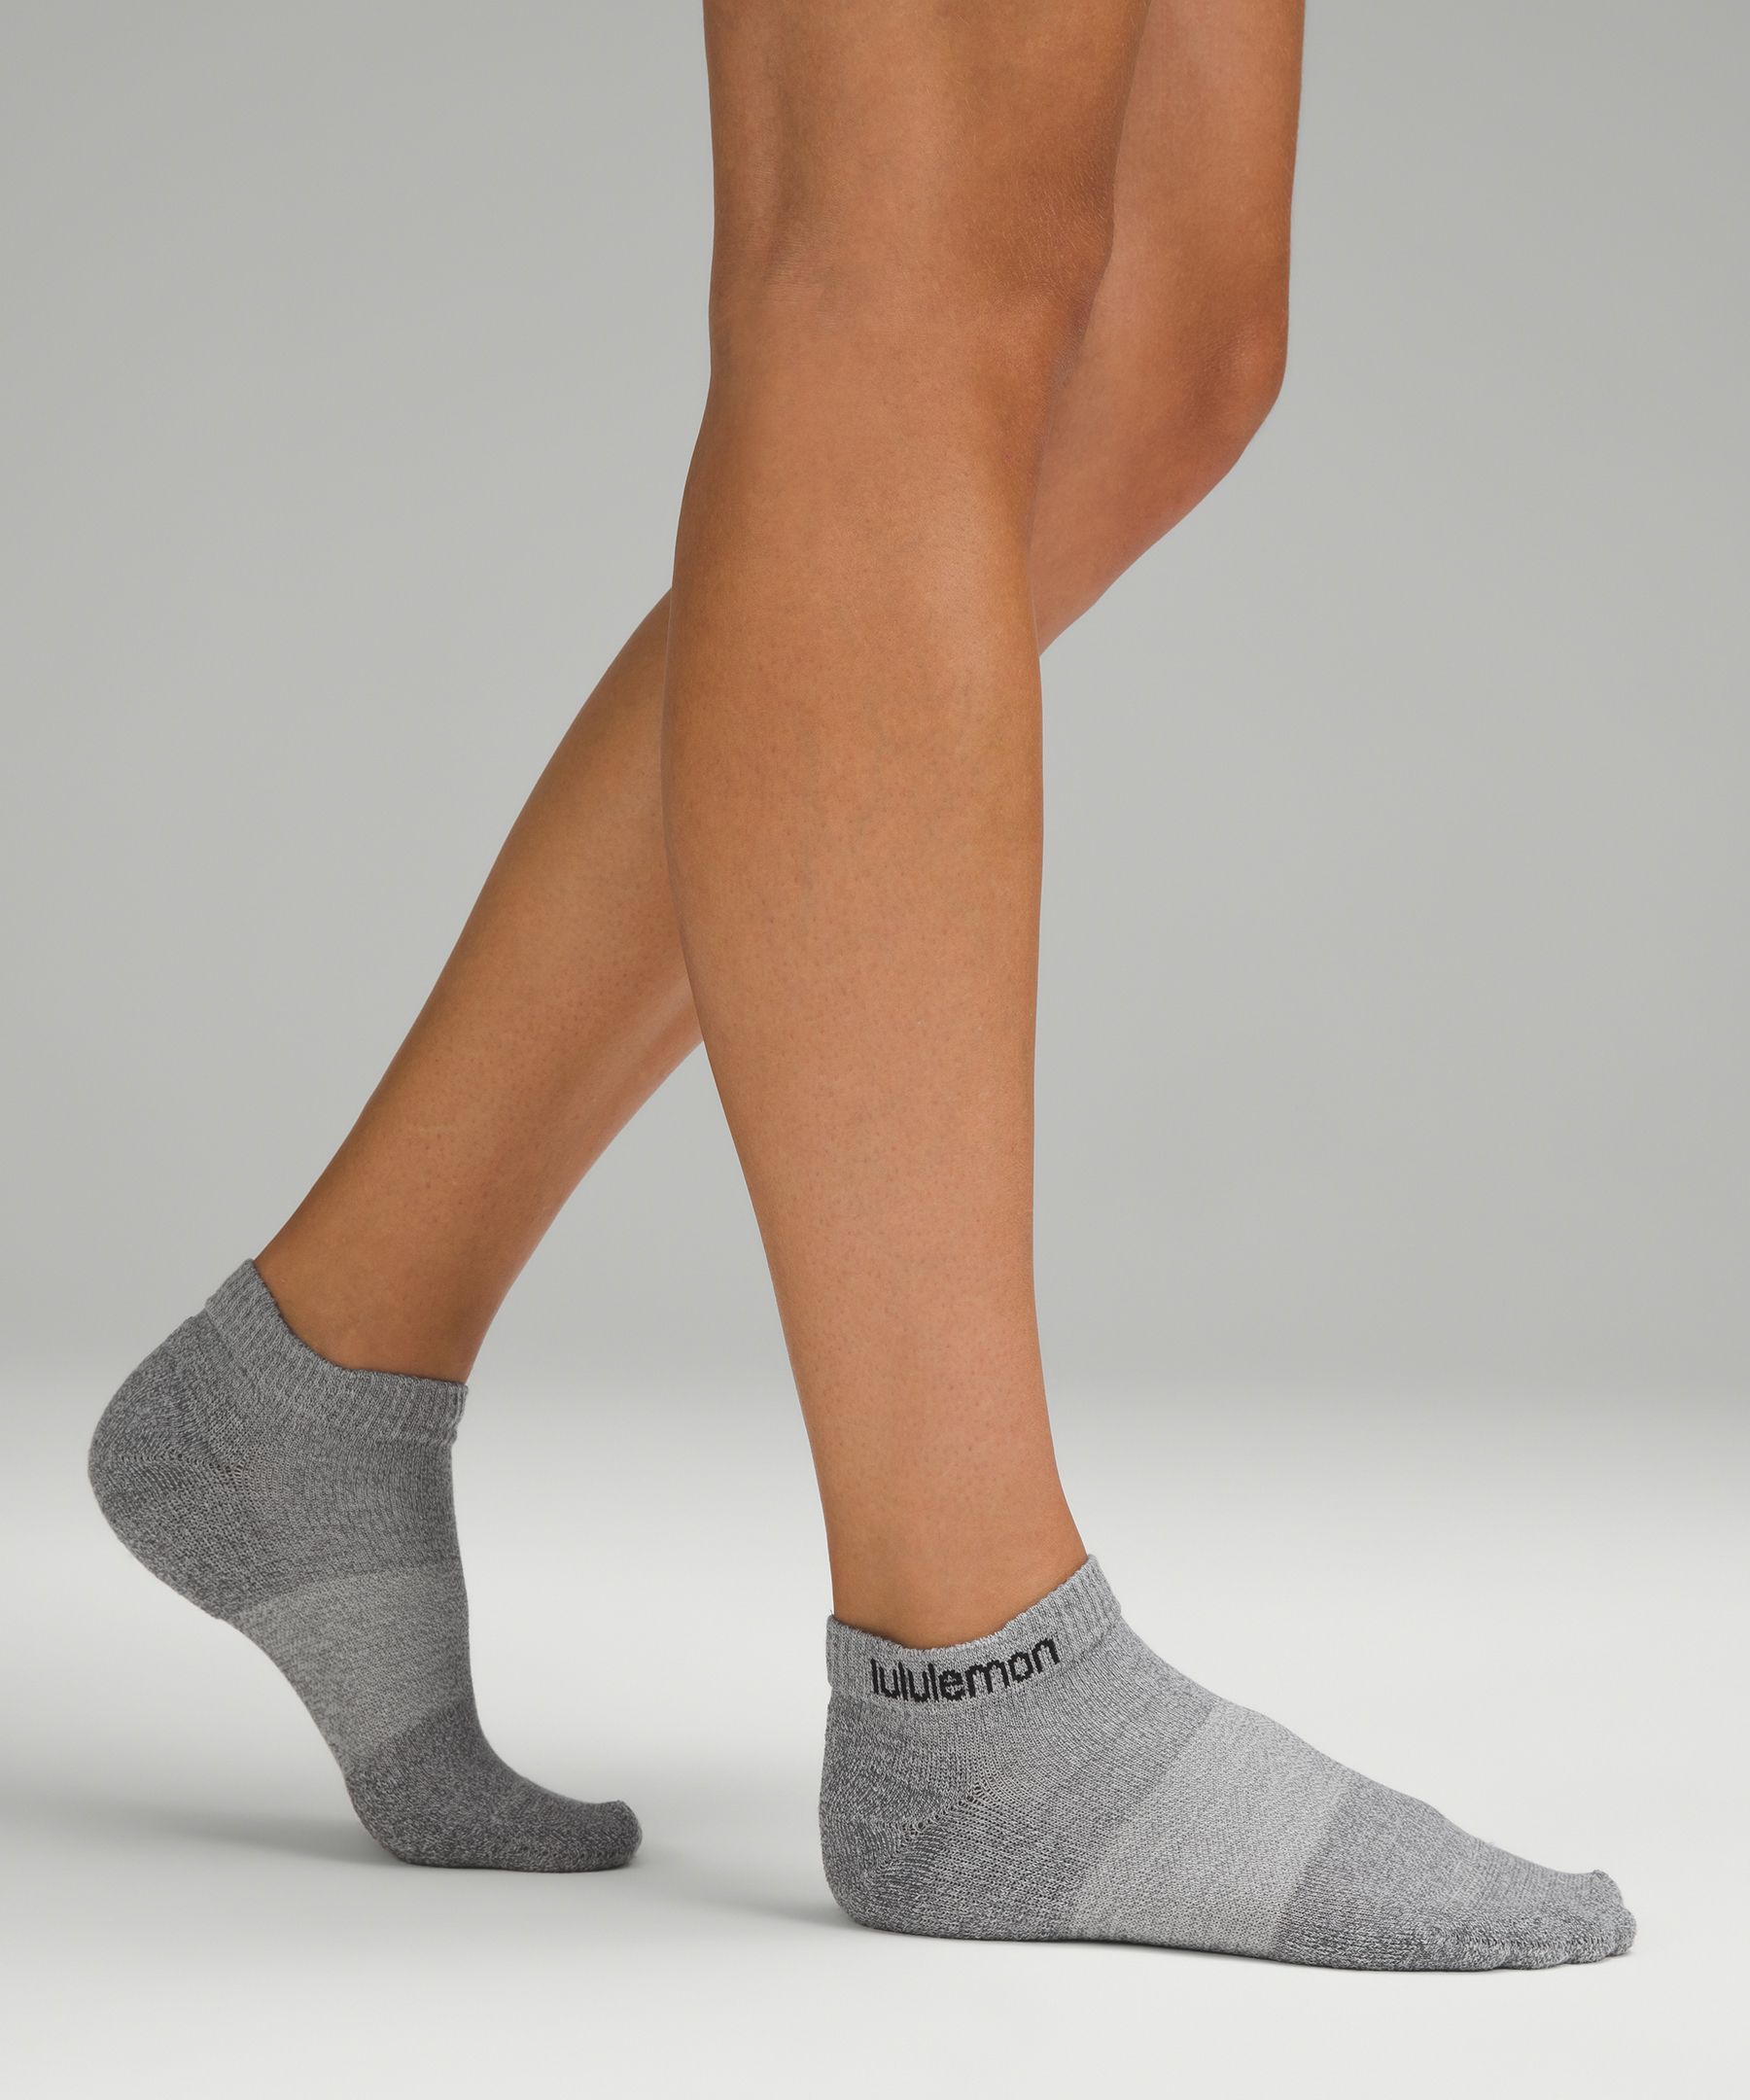 Women's Socks, Ankle & Crew Socks